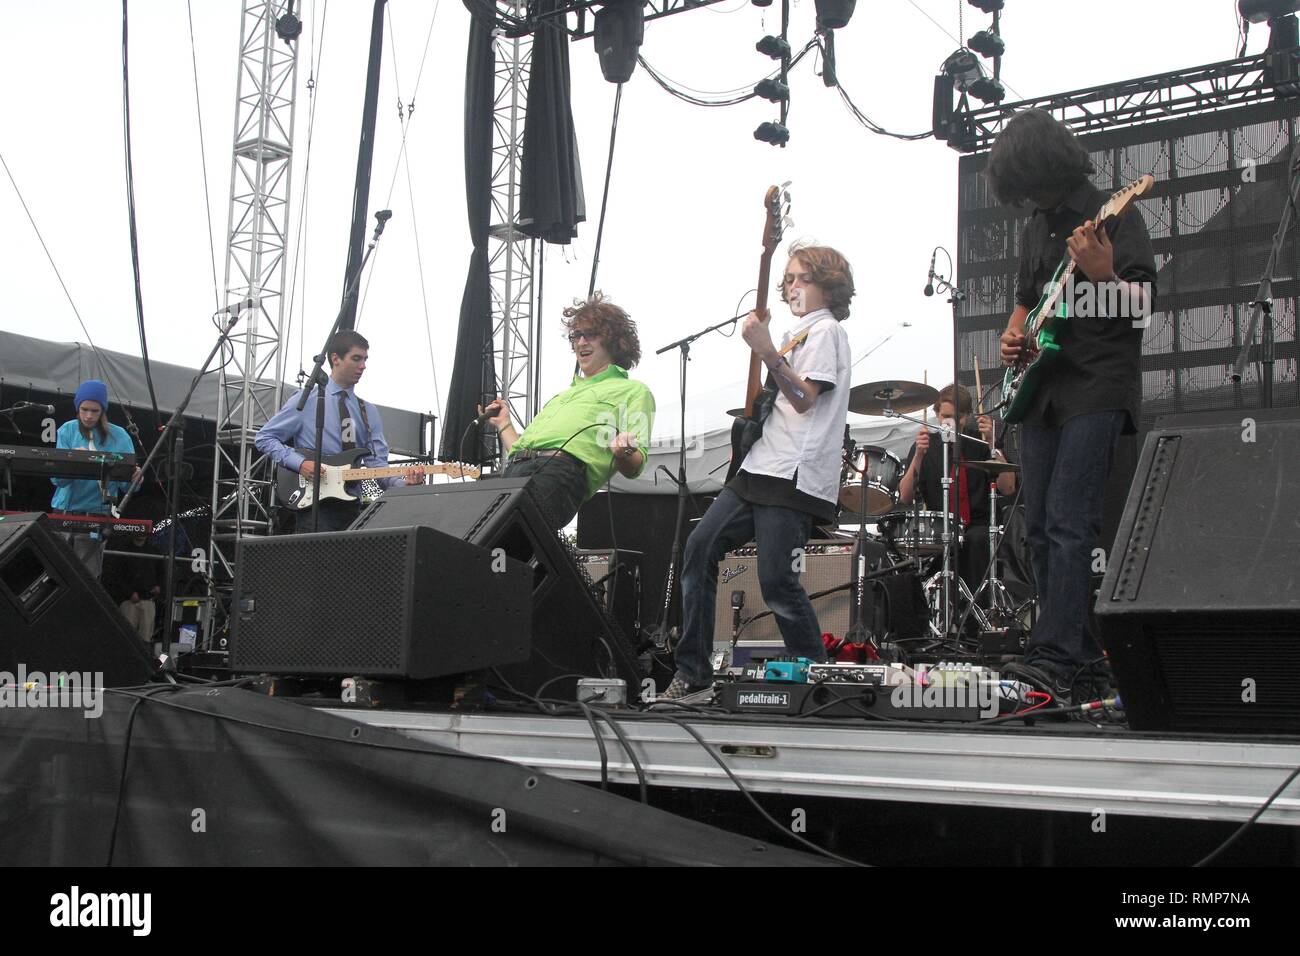 La Escuela de Rock Allstars aparecen actuando en el escenario durante un concierto 'live' apariencia. Foto de stock